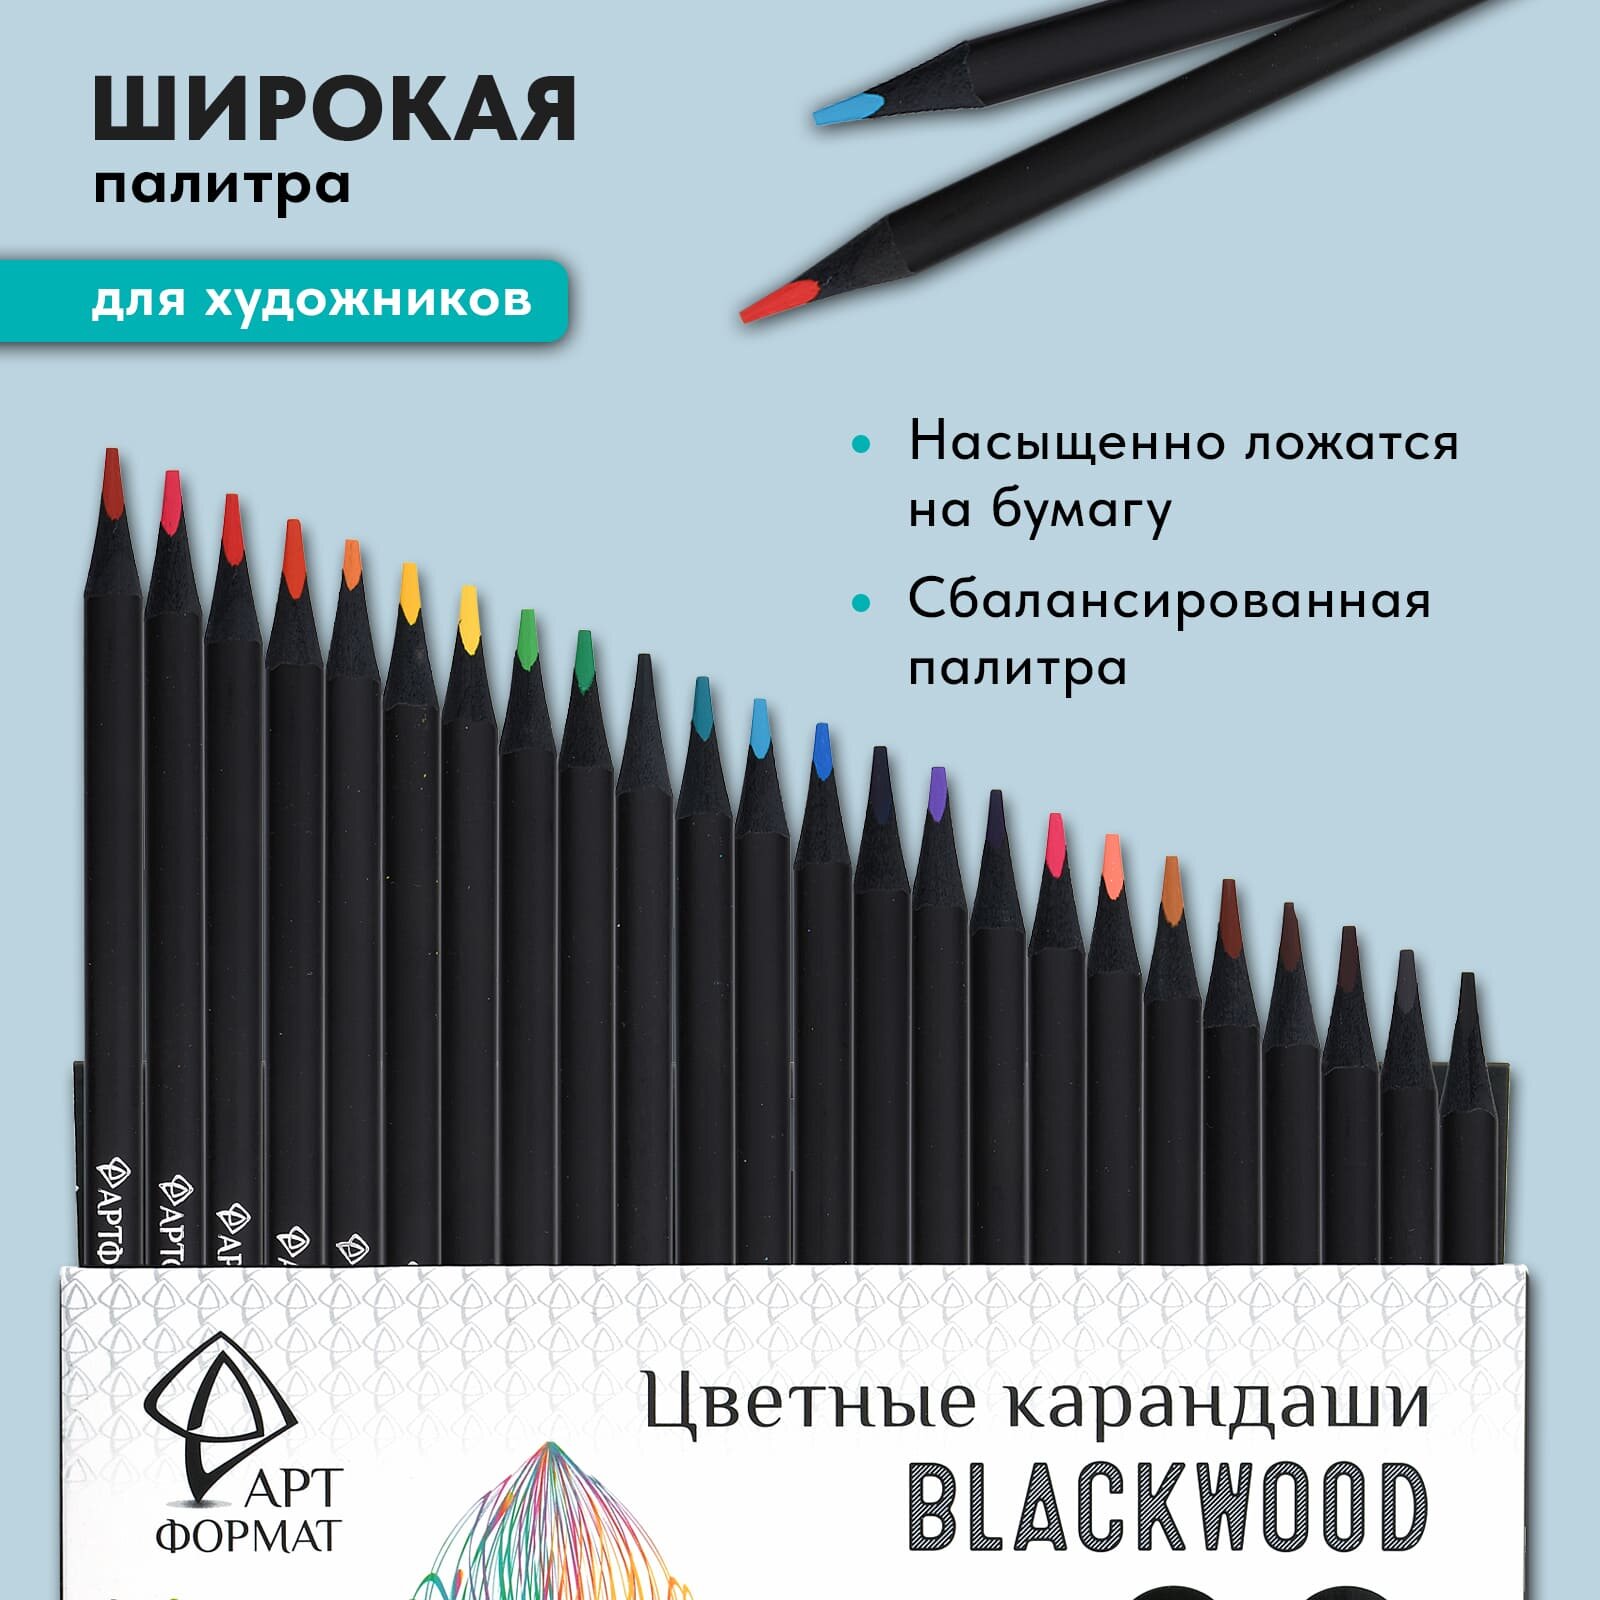 Набор цветных карандашей АРТформат Blackwood 24 цвета супер мягкий грифель трехгранные черное дерево